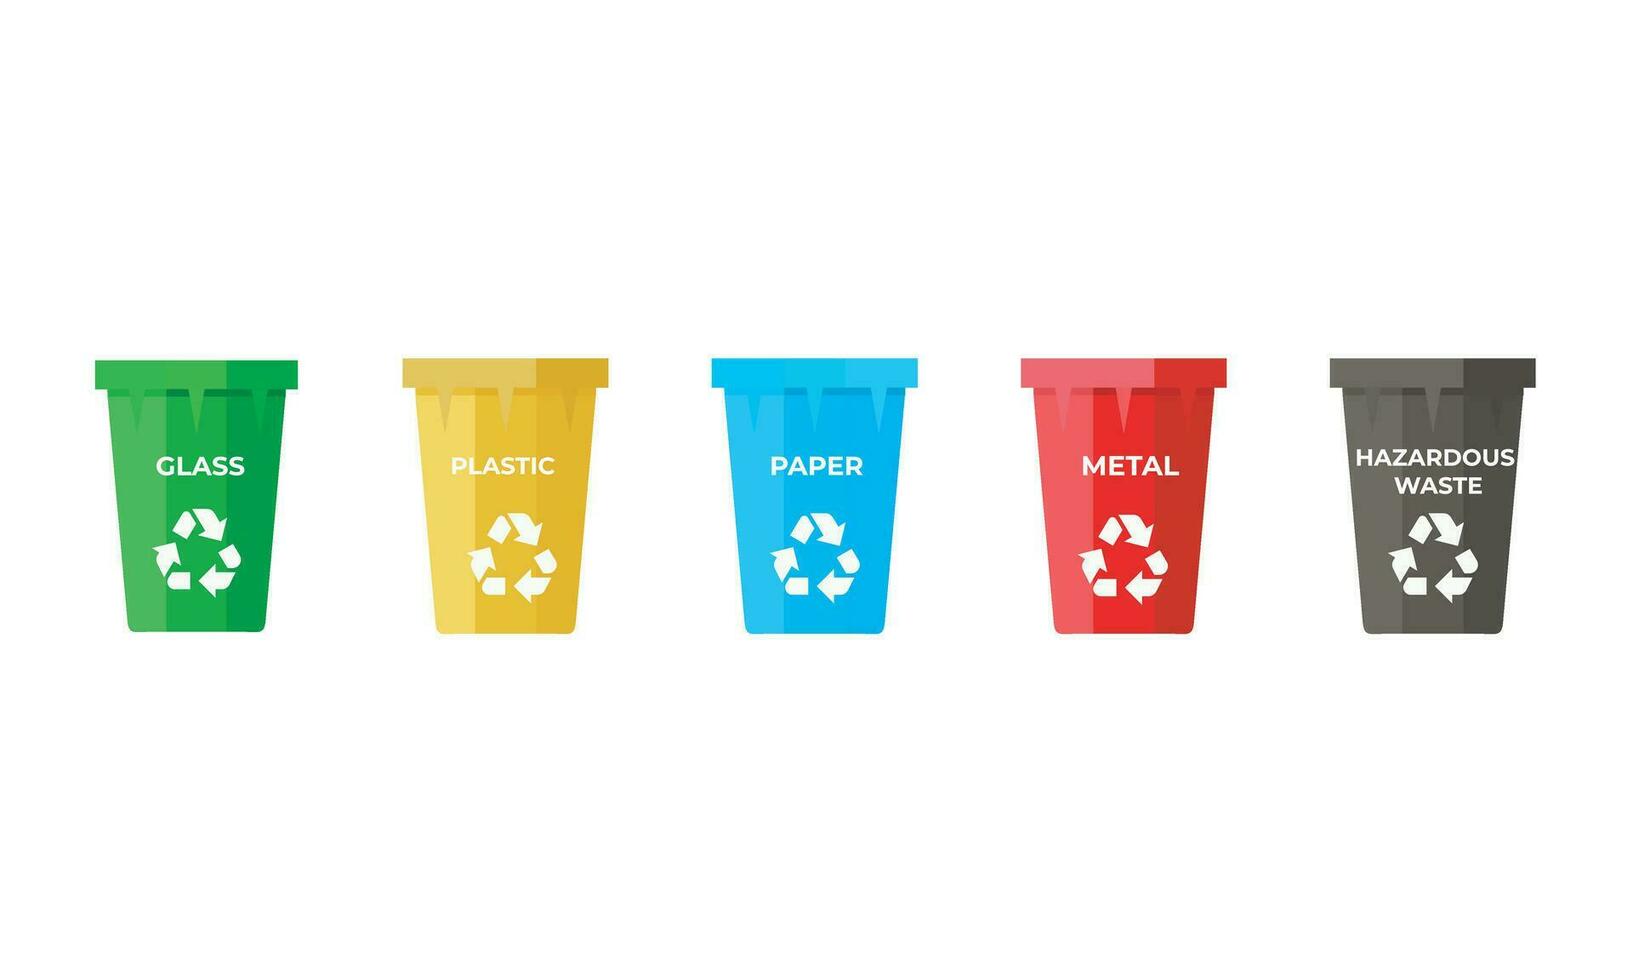 5 5 basura latas a ordenar vaso, el plastico, papel, metal y inseguro residuos vector